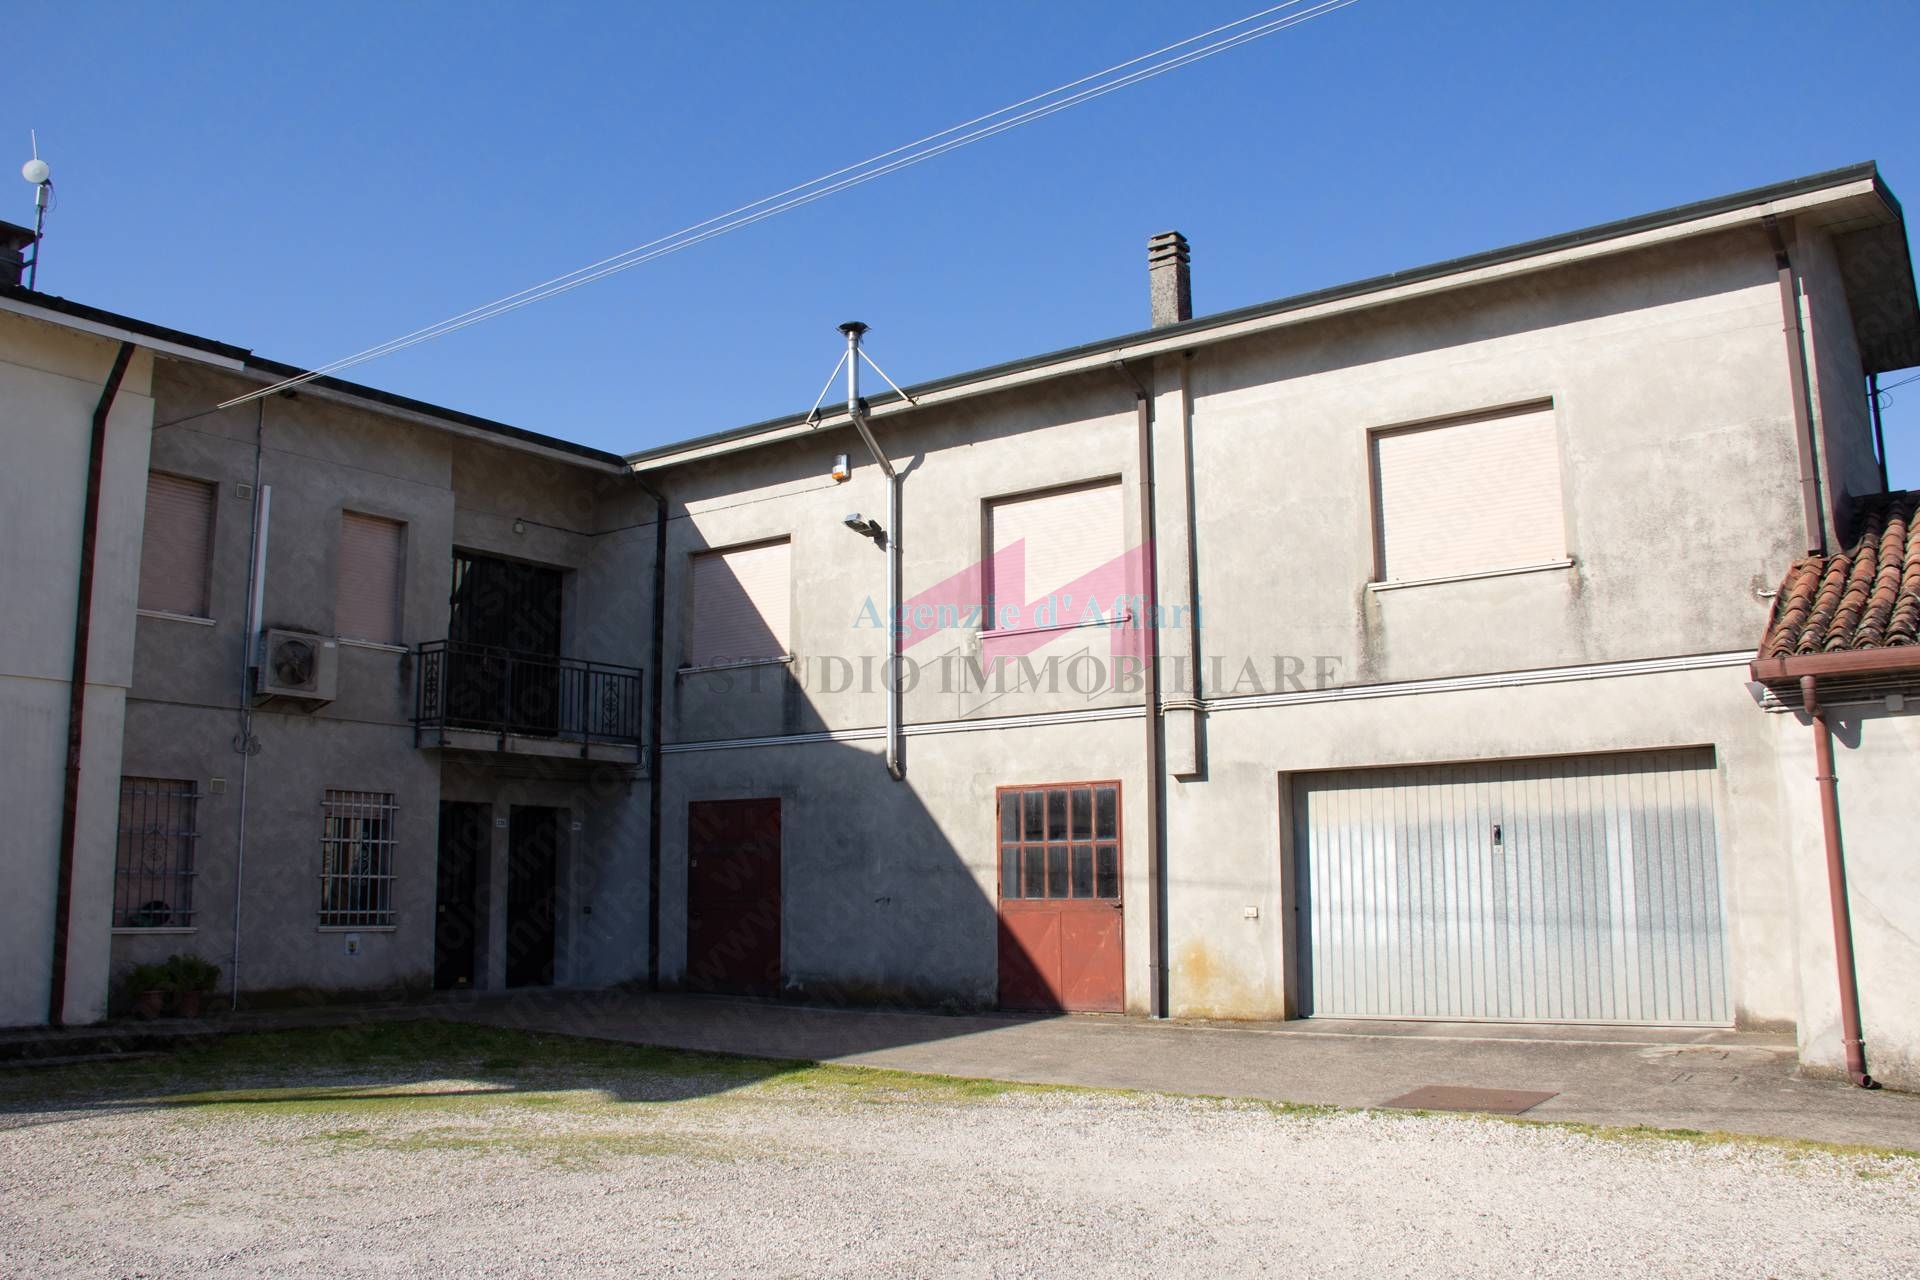 Negozio / Locale in vendita a Bergantino, 9999 locali, prezzo € 110.000 | PortaleAgenzieImmobiliari.it